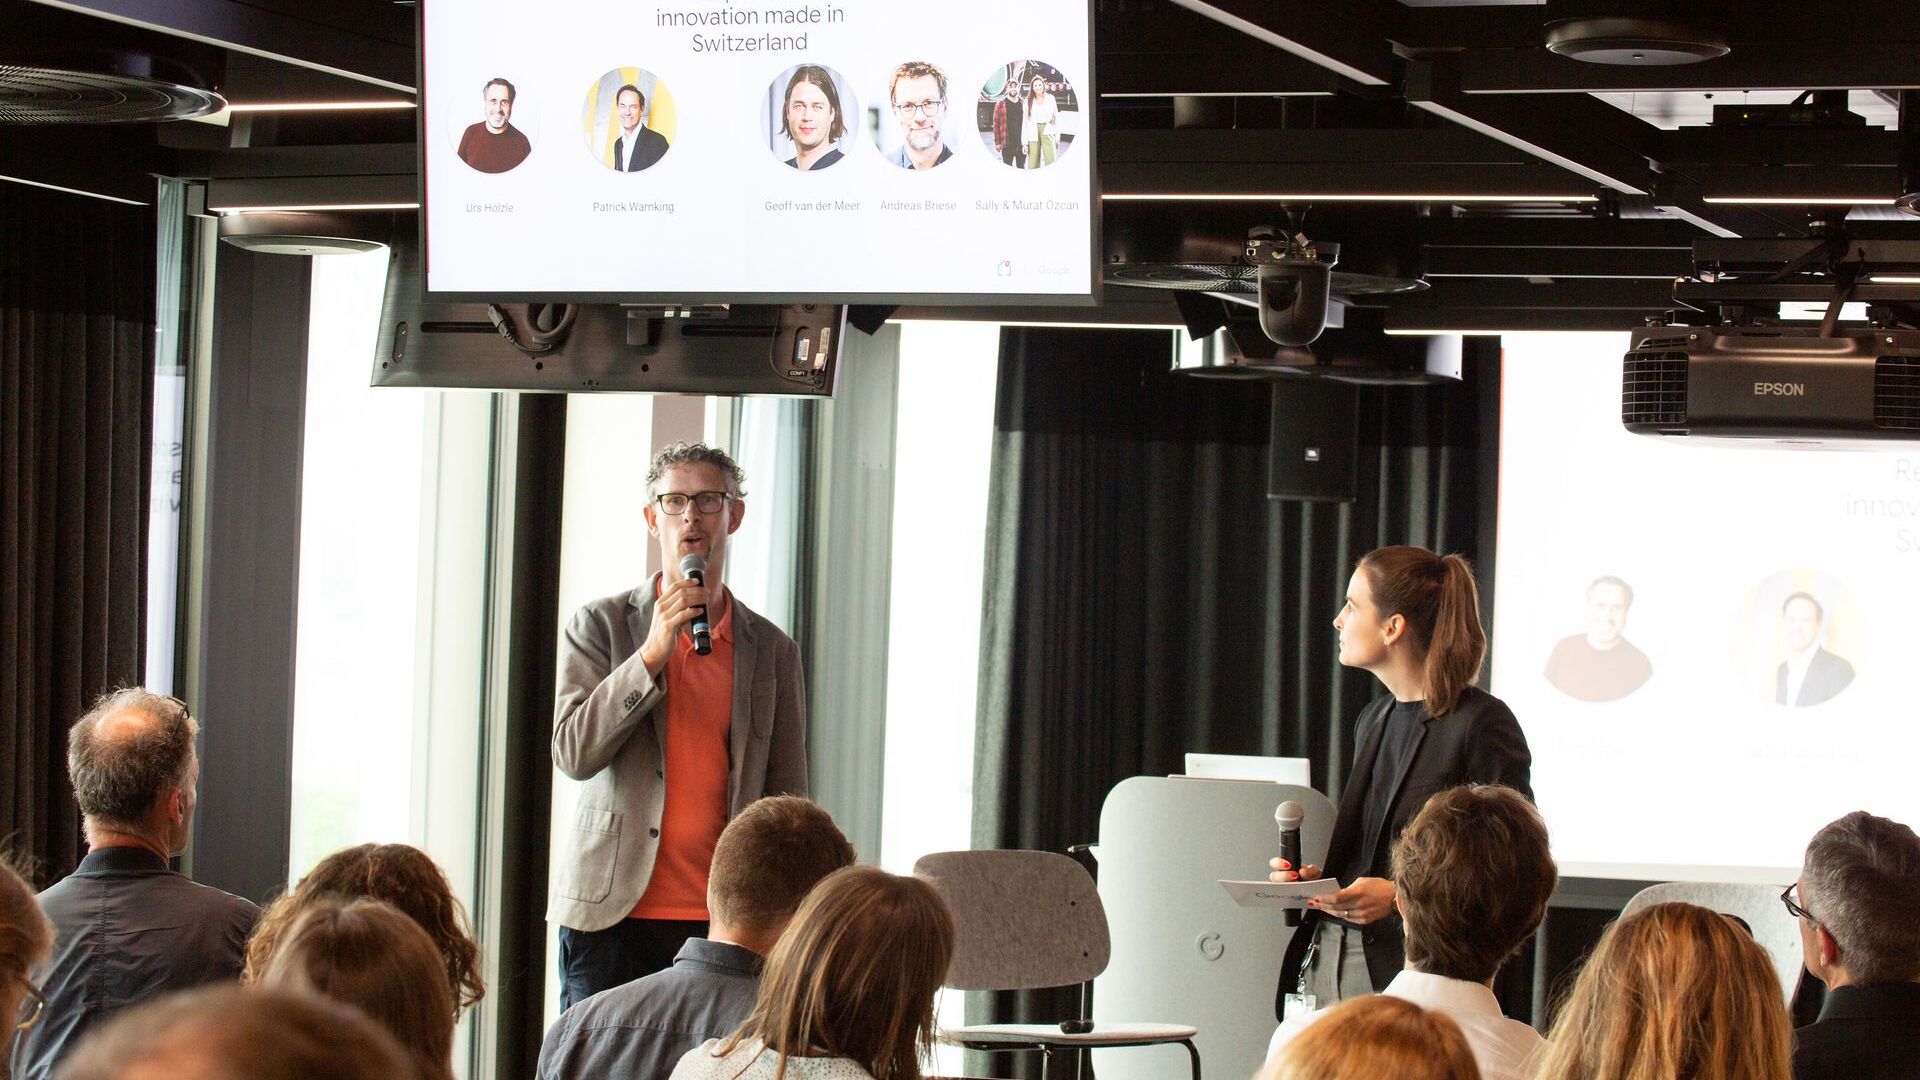 Samuel Leiser och Pia De Carli, mediateamet Google Switzerland, deltog i den officiella invigningen av nya Google Campus Europaallee i Zürich den 27 juni 2022